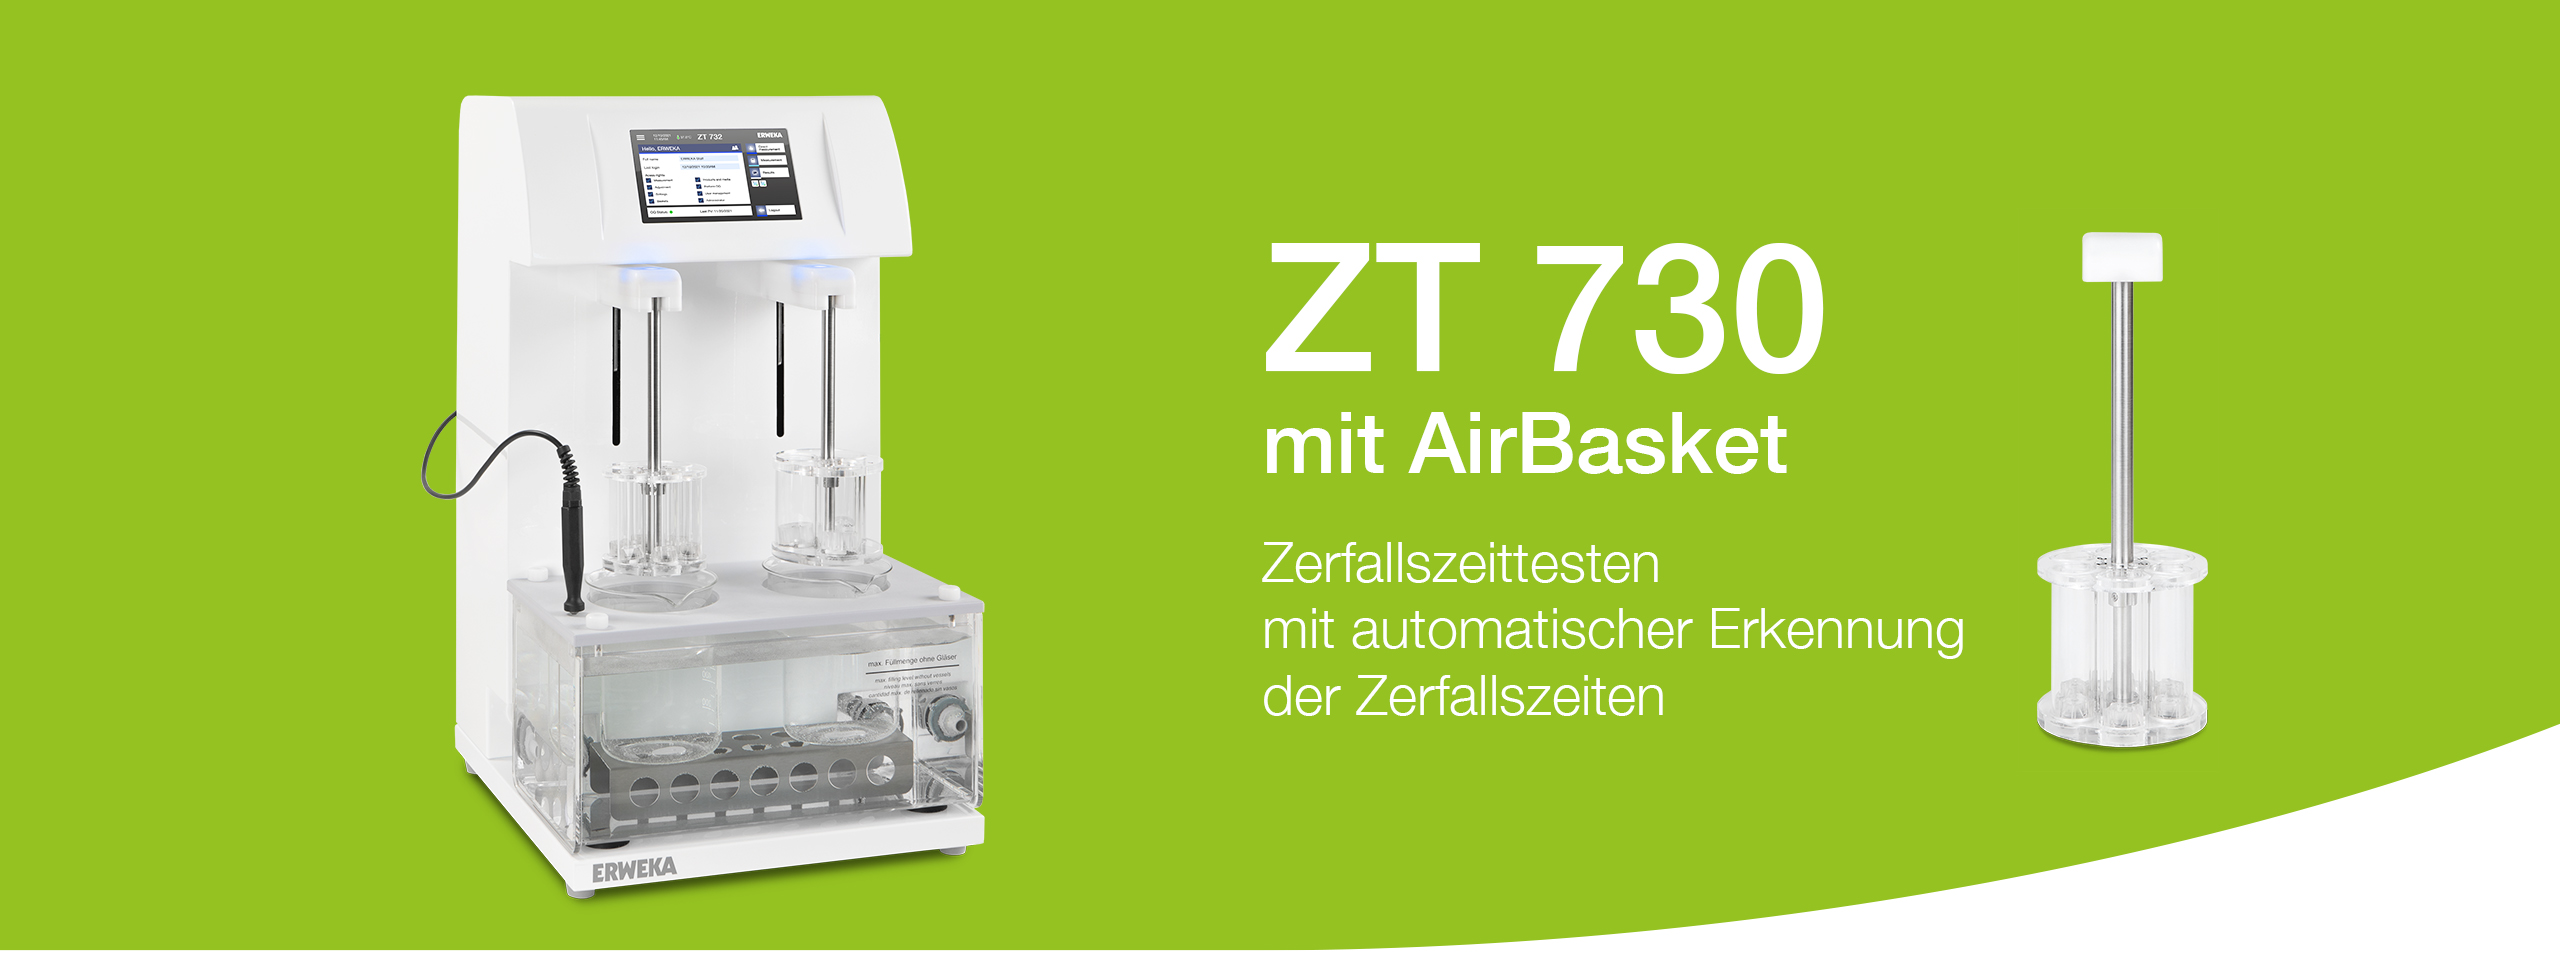 ZT 730 mit AirBasket